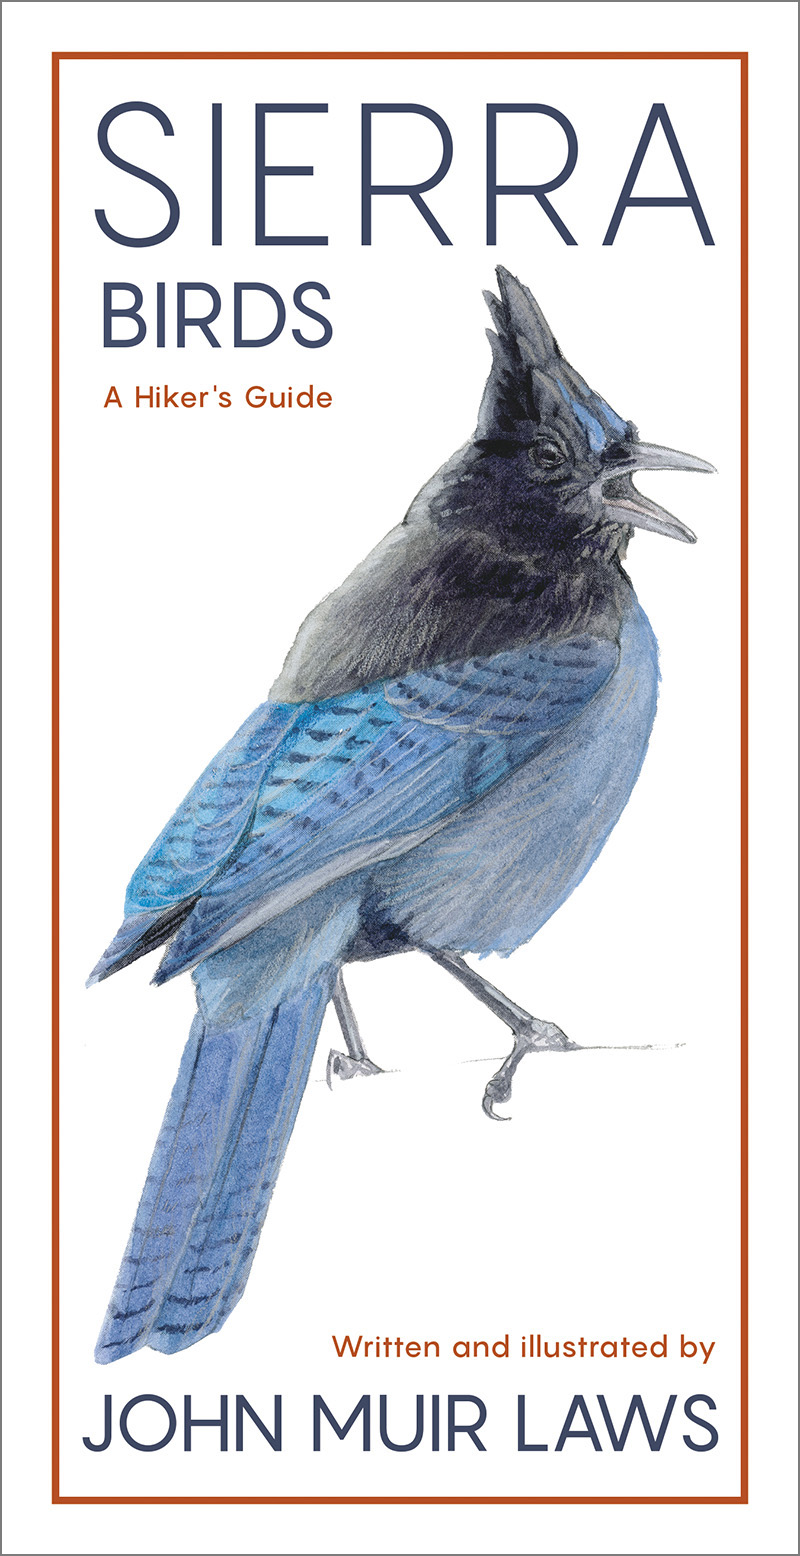 Sierra Birds: A Hiker’s Guide